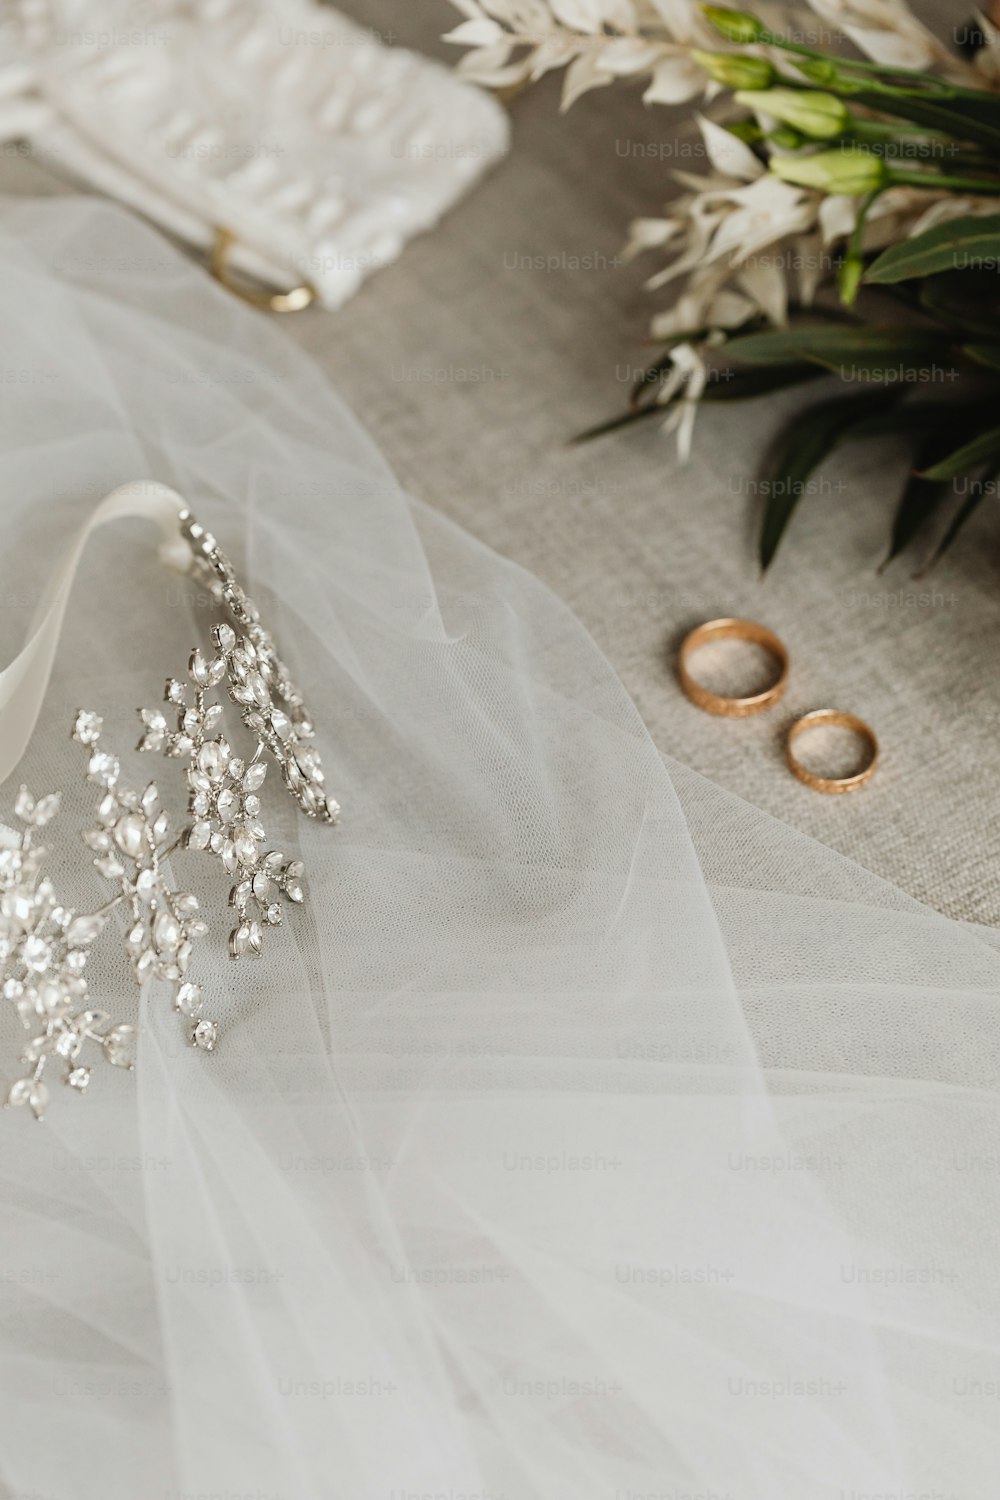 テーブルの上にウェディングドレスと2つの結婚指輪